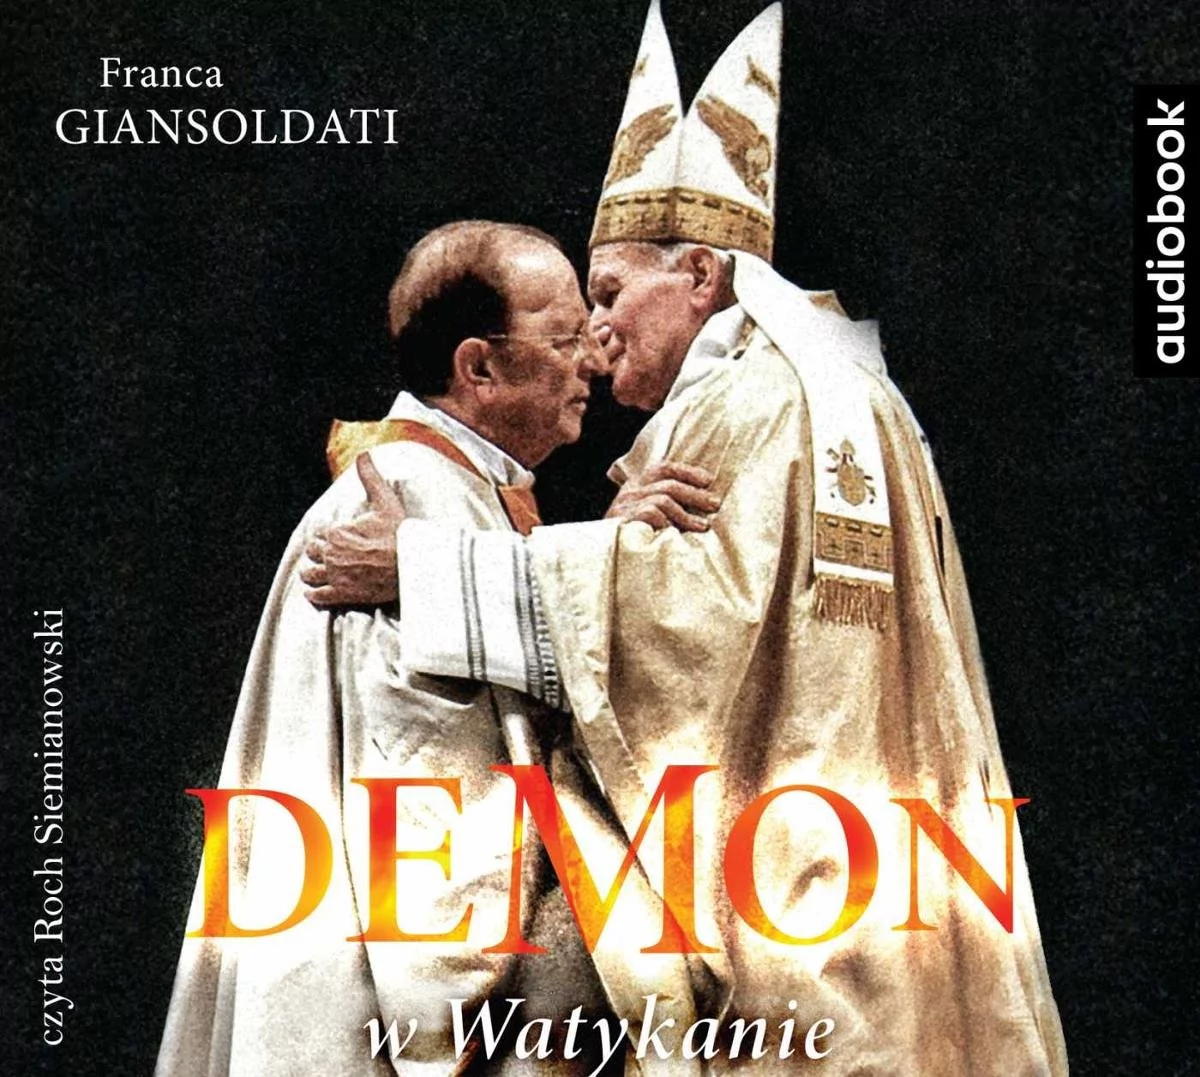 Demon w Watykanie Franca Giansoldati MP3)